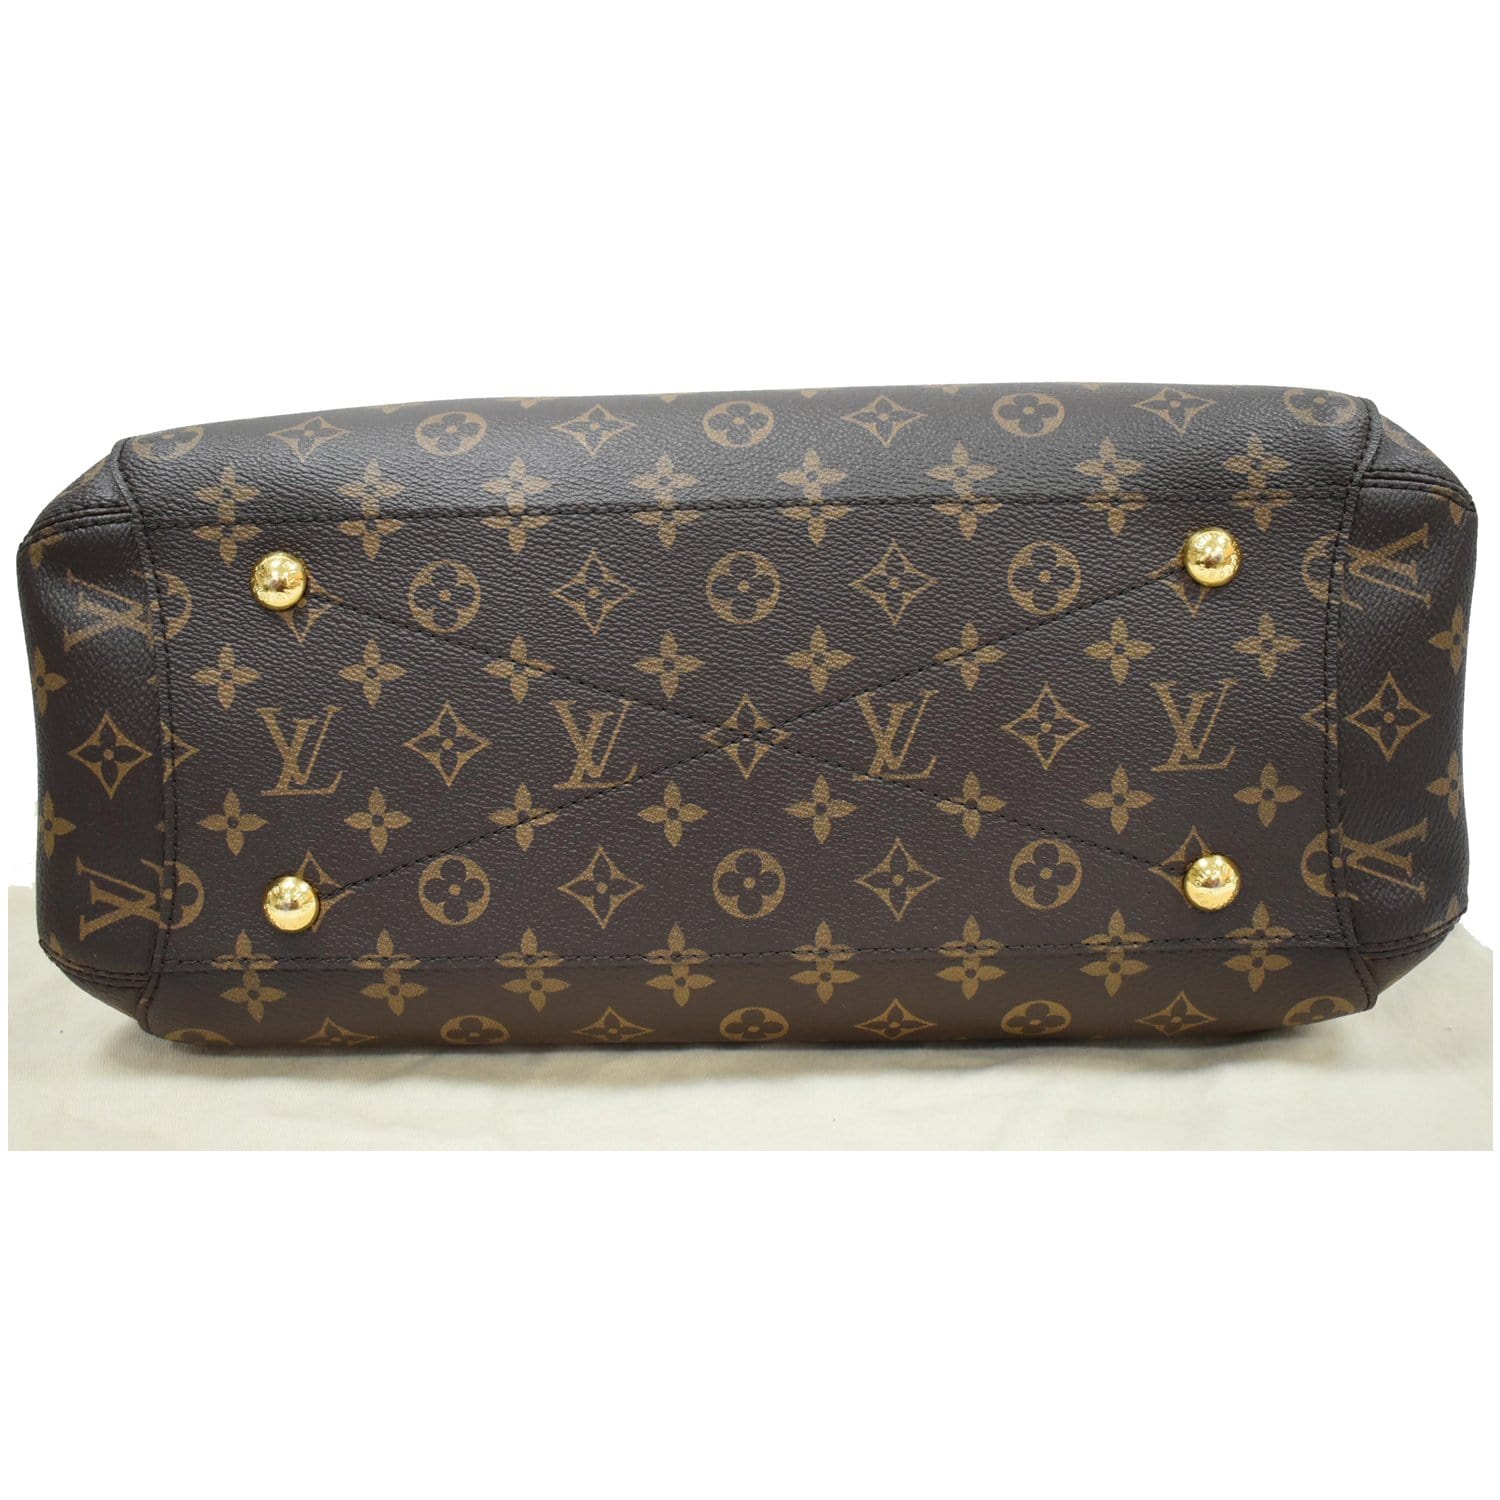 LV Montaigne Handbag ❣Grade 5A ❣